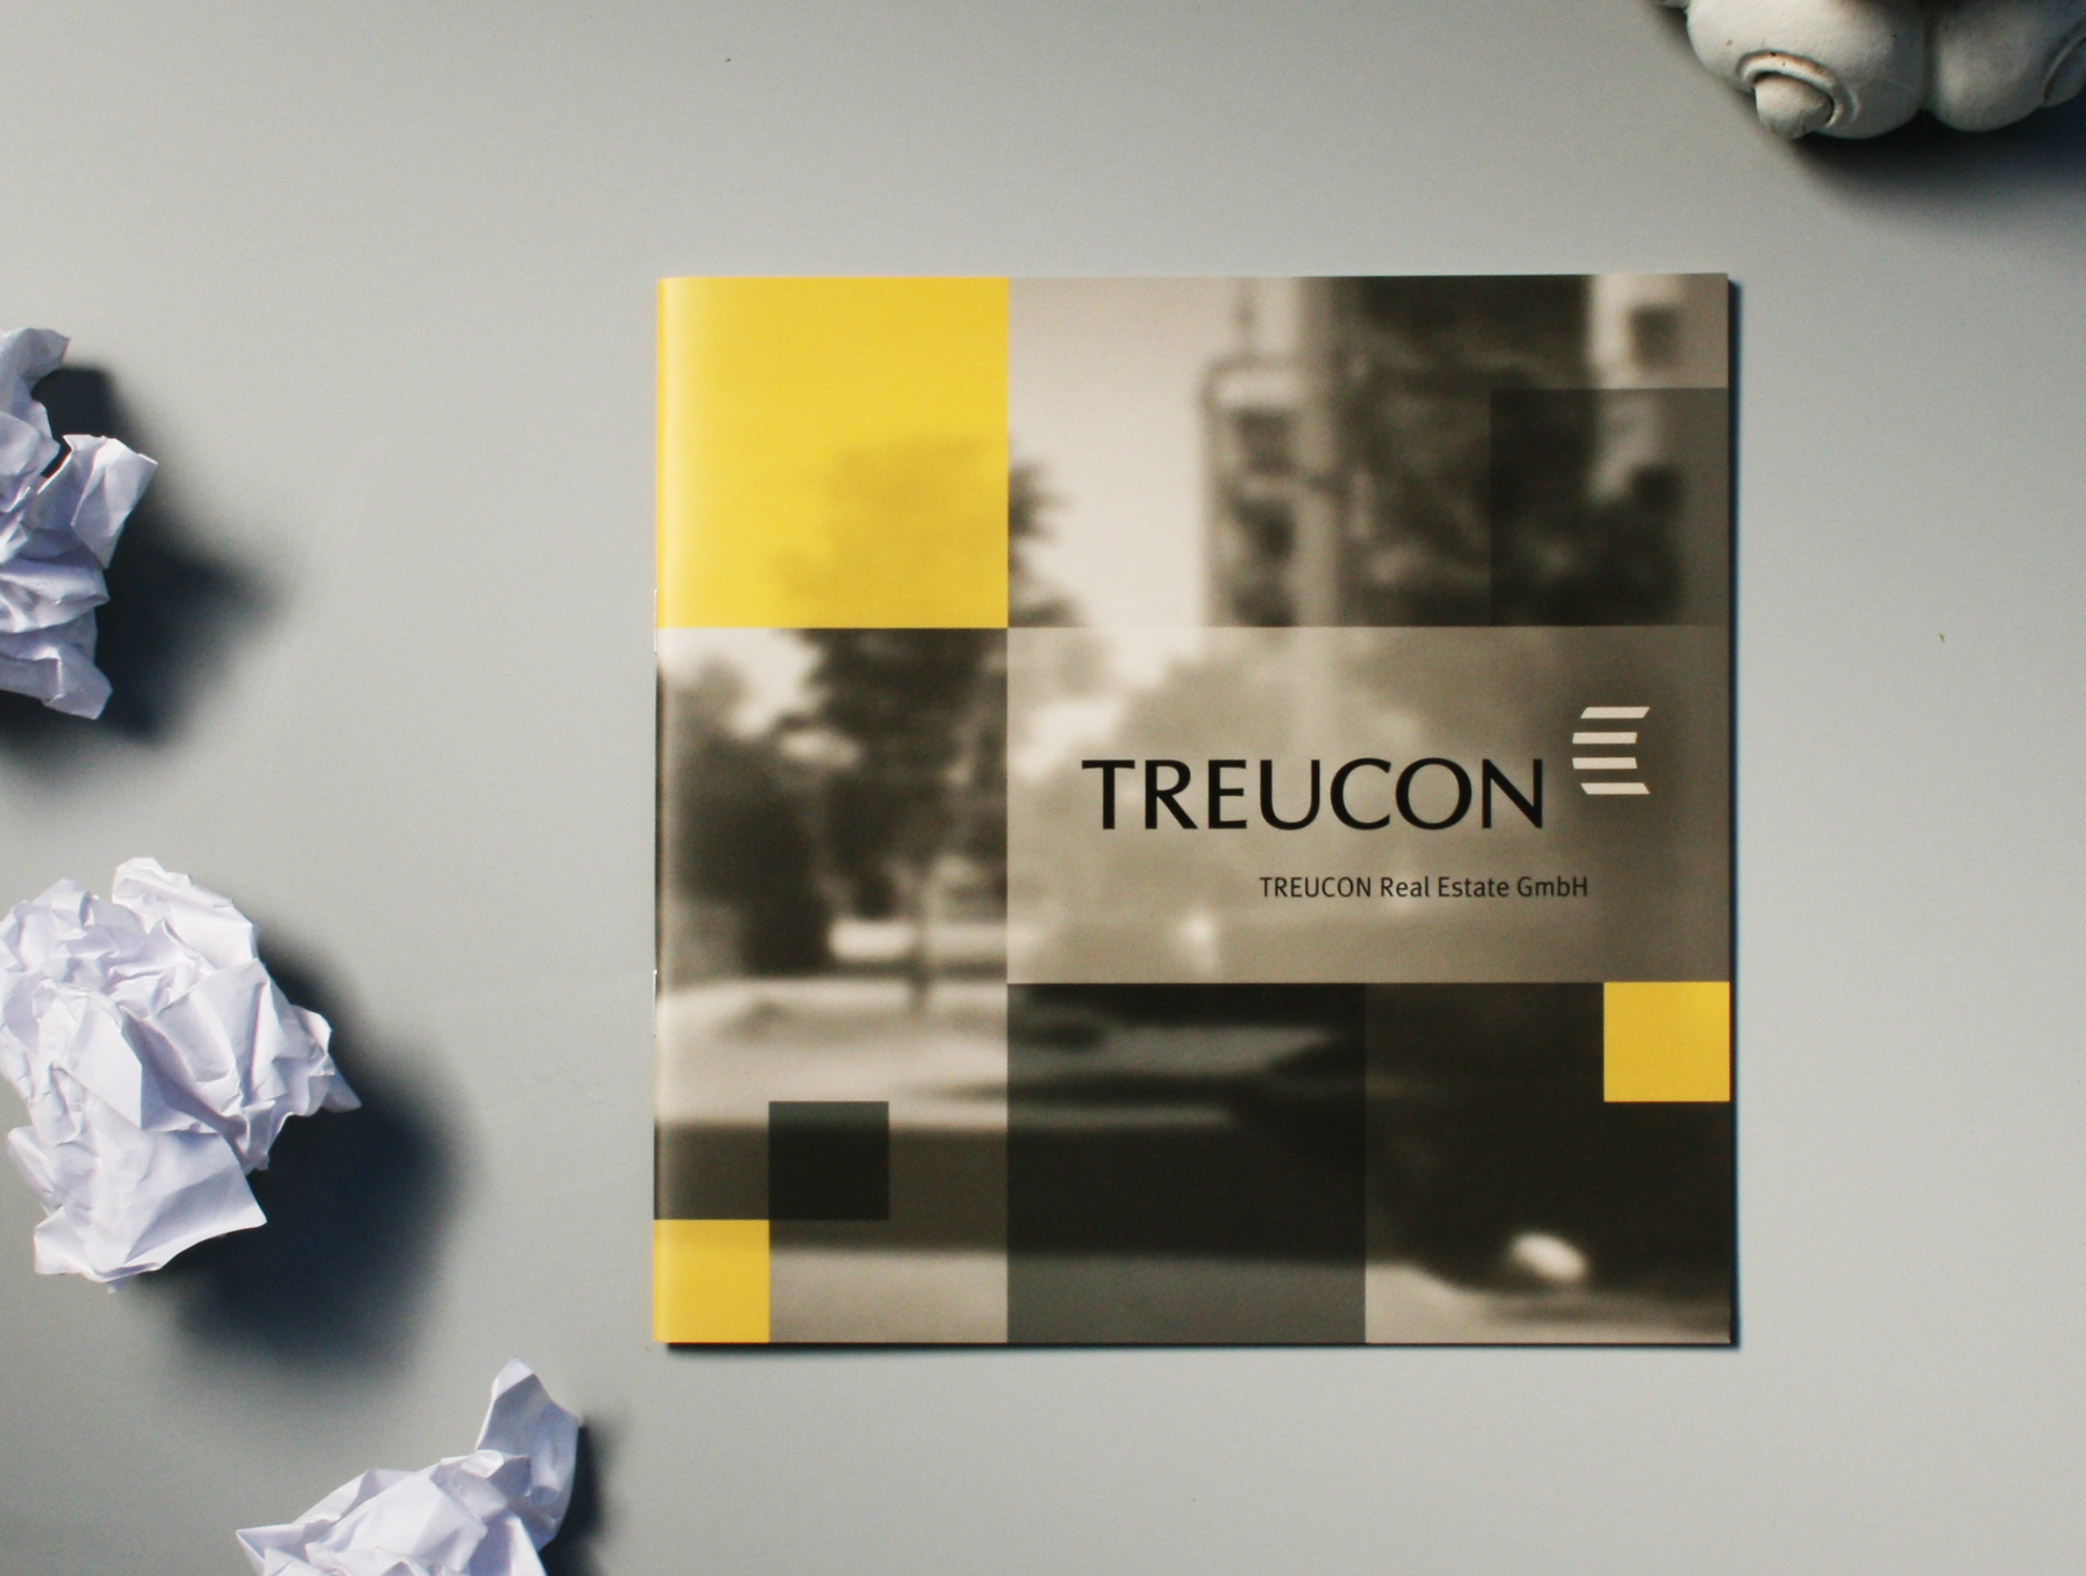 Mockup der Imagebroschüre Treucon Real Estate GmbH Berlin. Die Gestaltung des Covers besteht aus einer Collage mit tranzparenten schwarzen, gelben und weißen Flächen und einem diffusen Foto im Hintergrund, darauf ist das Logo von Treucon Real Estate platziert.